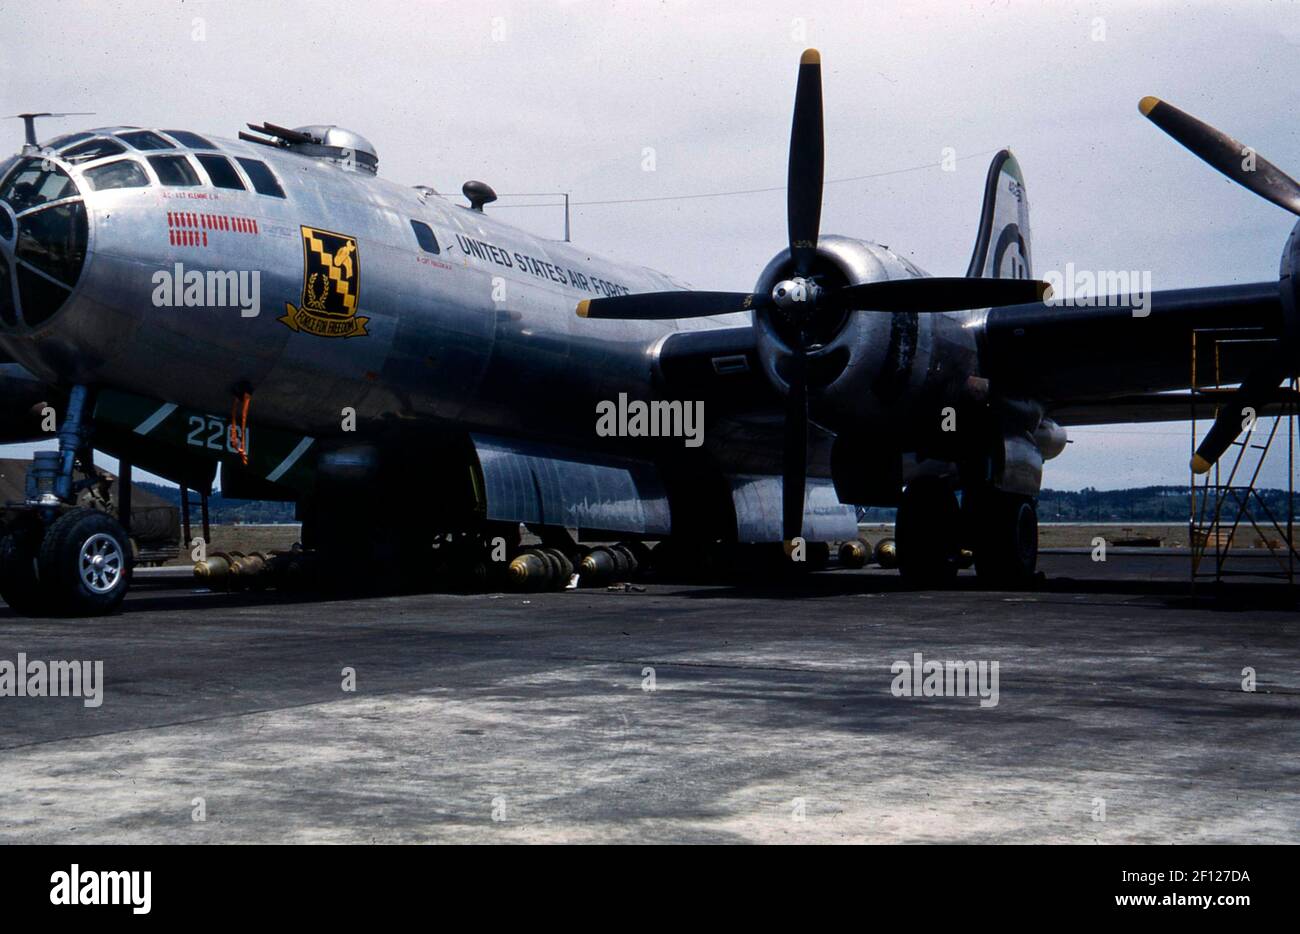 Vista frontal izquierda de tres cuartos de un Boeing B-29 Superfortress con bombas bajo el avión. El arte de la nariz incluye el apodo de "Fuerza por la Libertad" con el símbolo, y el número de misiones de bombas representadas como bombas. Foto de stock